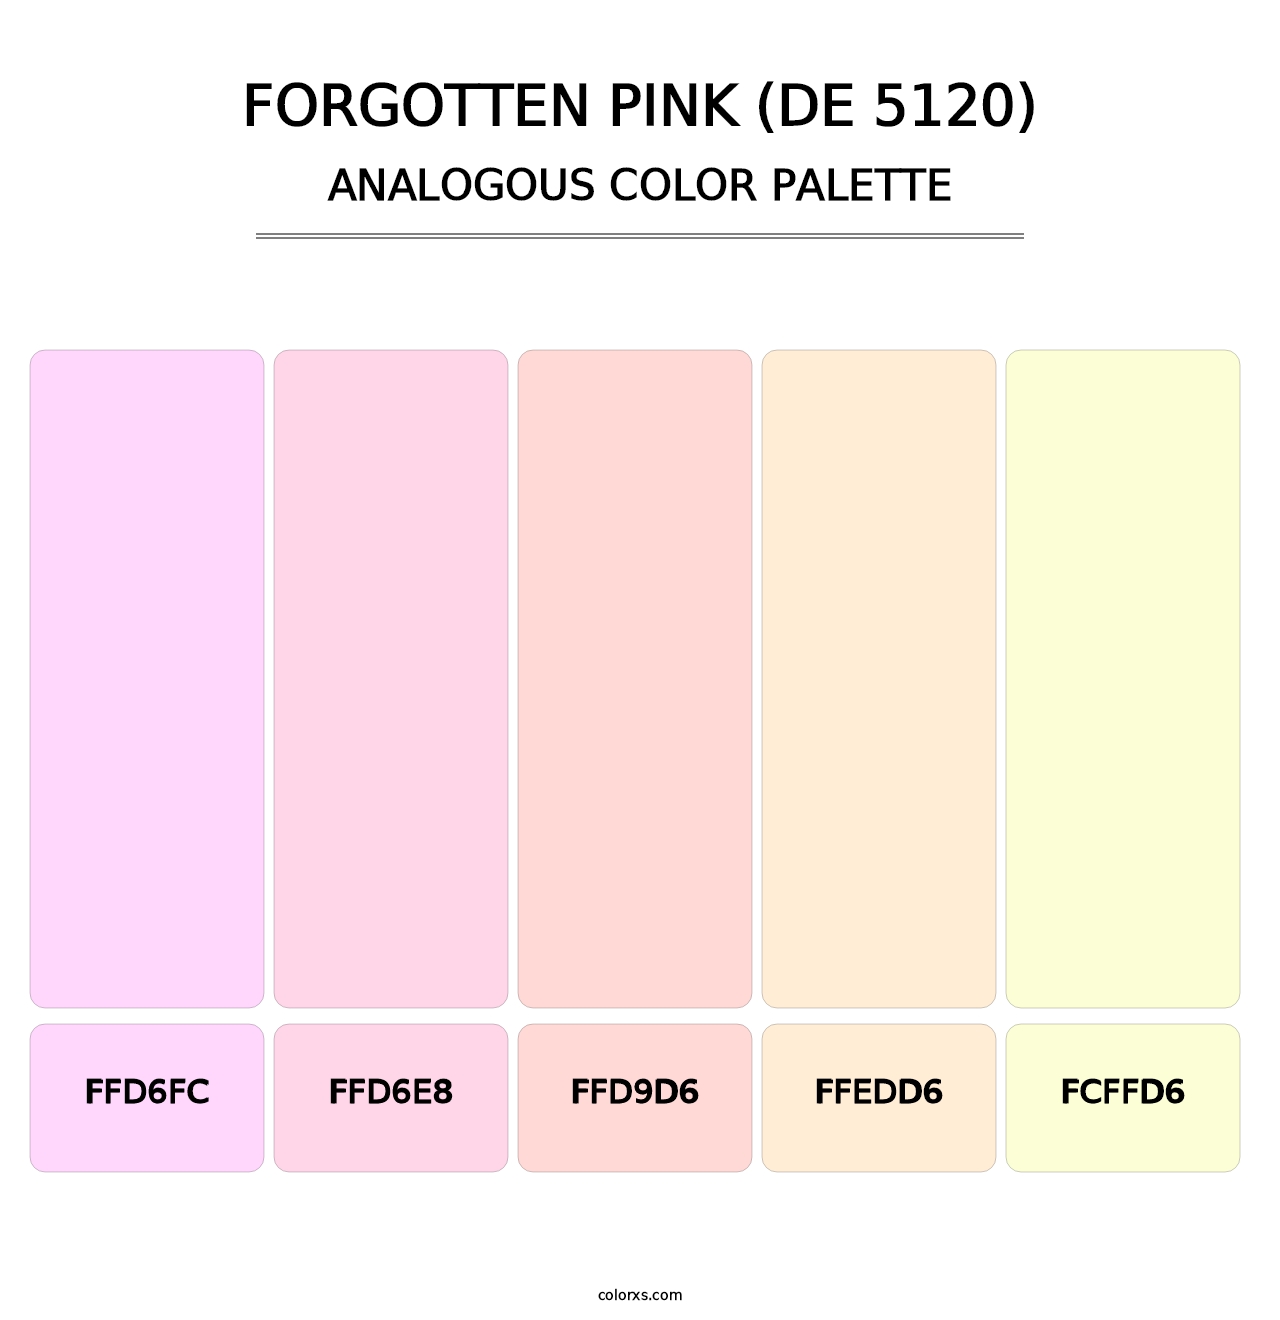 Forgotten Pink (DE 5120) - Analogous Color Palette